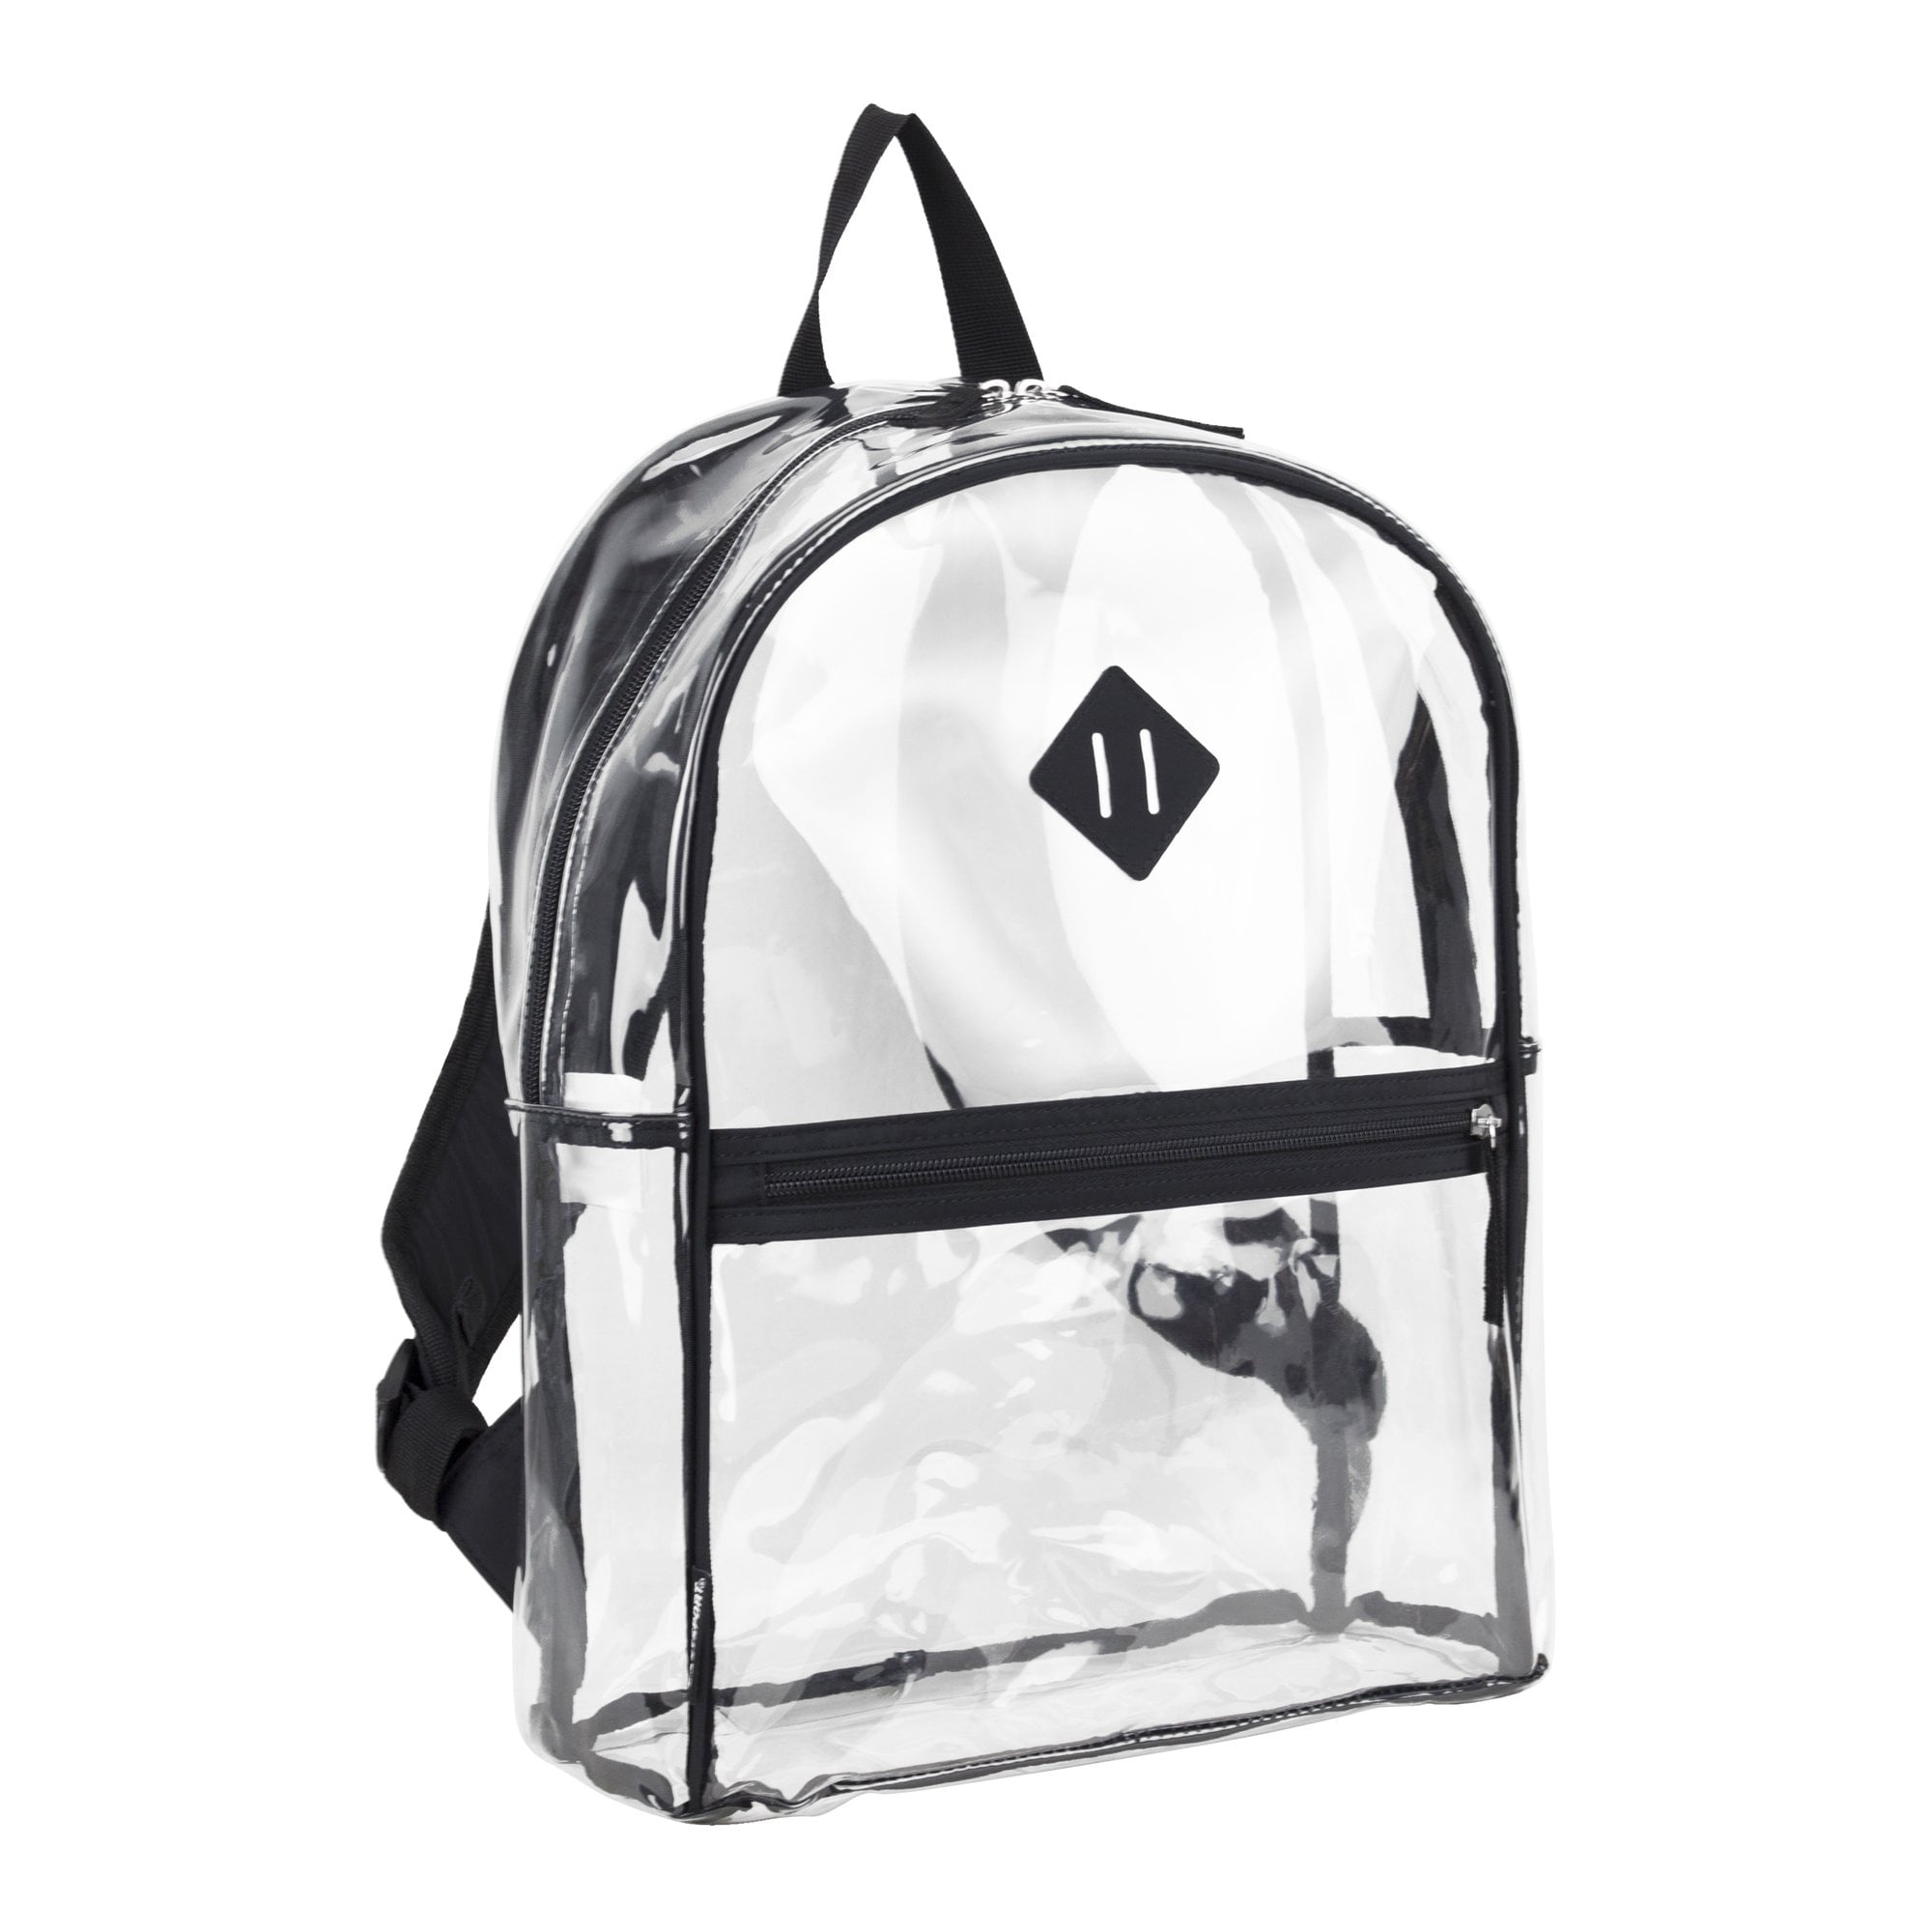 School Backpacks in Backpacks 